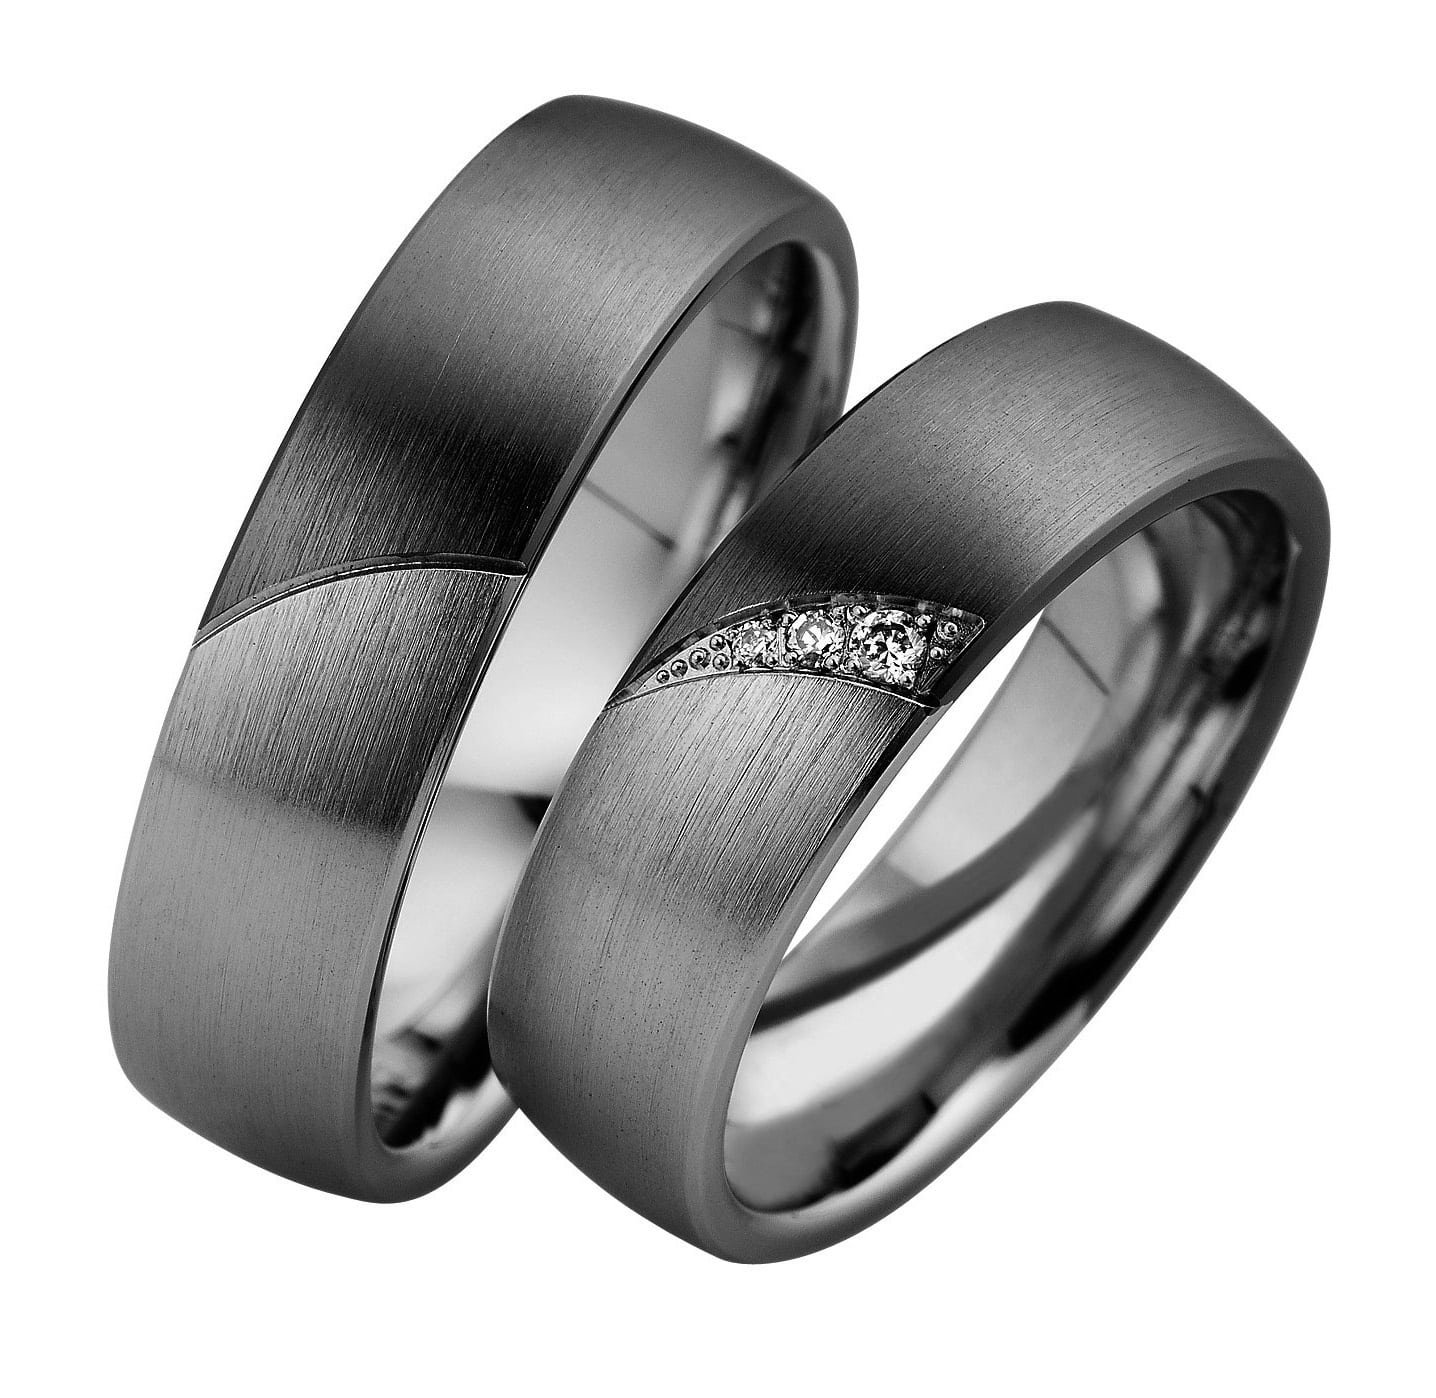 Купить обручальное серебро. Серебряное обручальное кольцо. Обручальные кольца парные. Обручальные кольца серебро. Серебряные обручальные кольца парные.